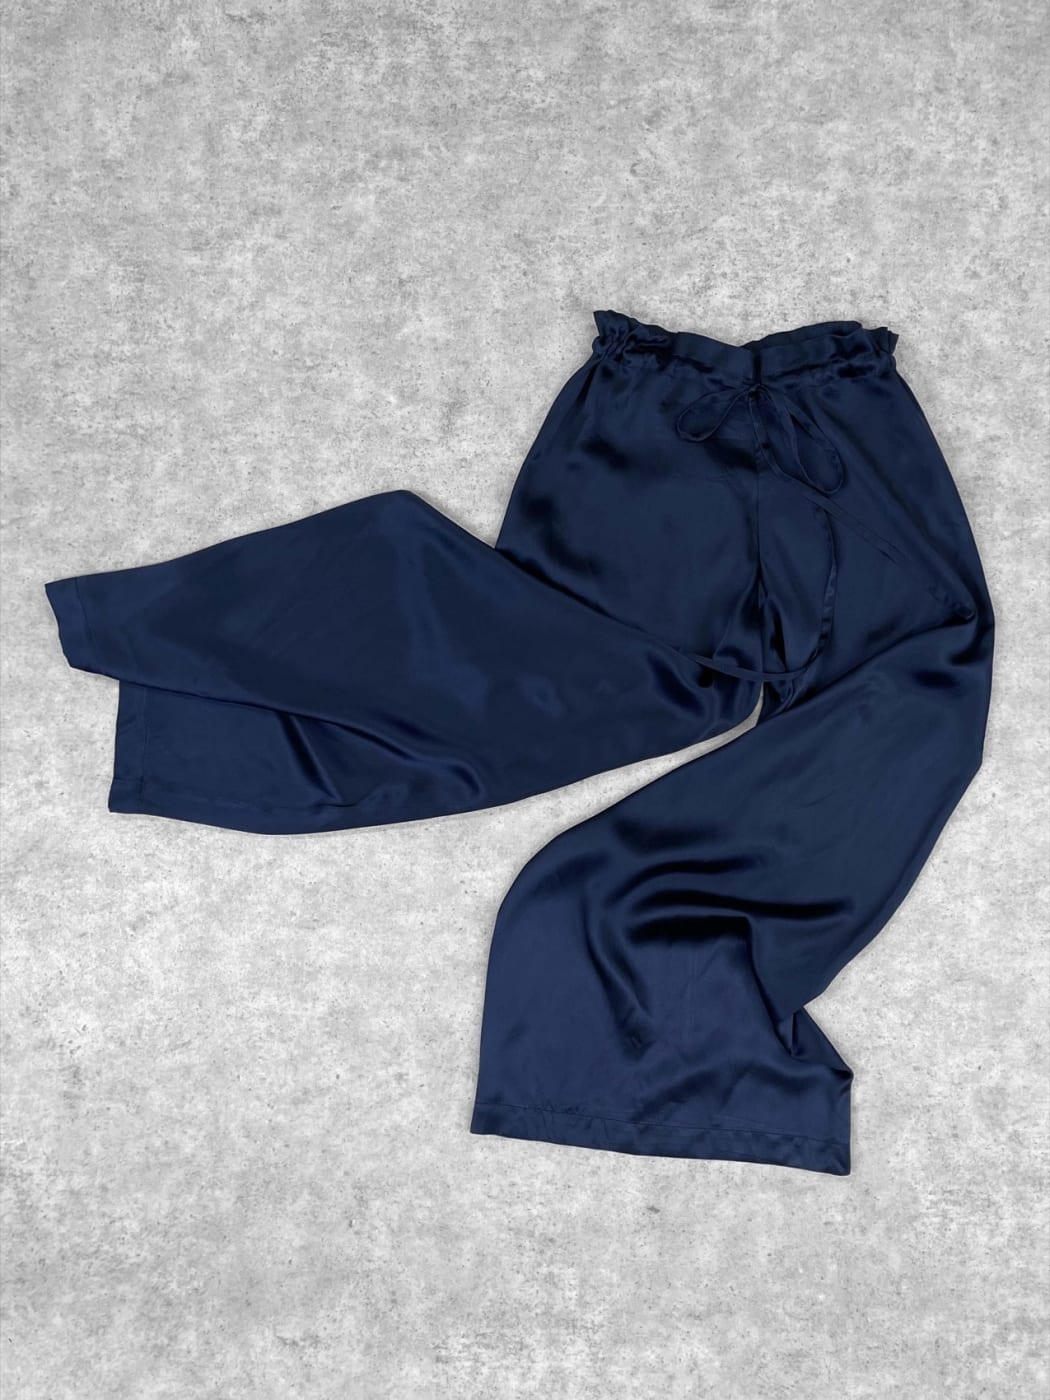 Photo secondaire du produit Pantalon Fluide Bleu Marine de la marque Ines de la Fressange Paris